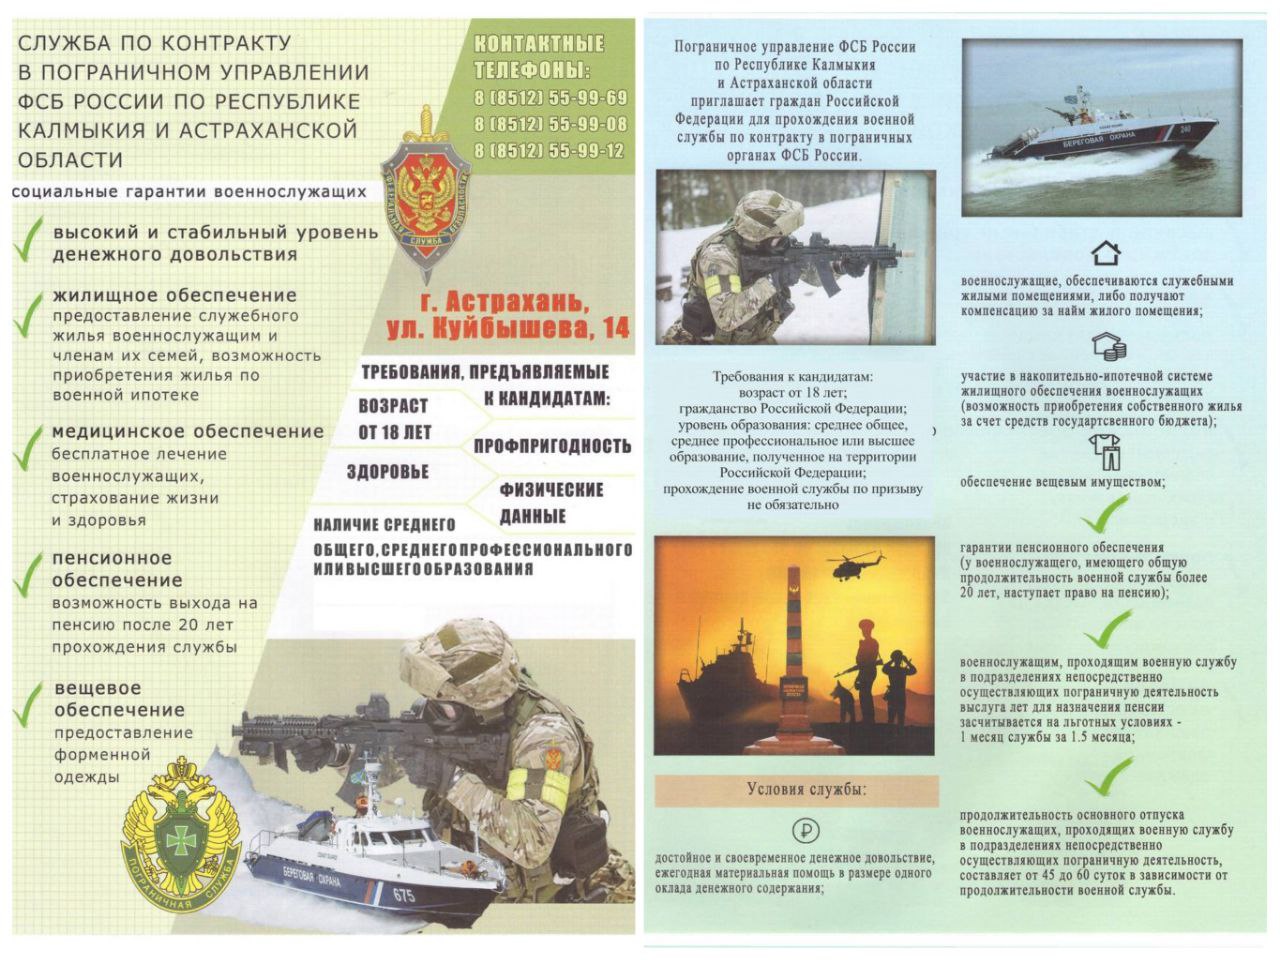 Погрануправление ФСБ России приглашает астраханцев на службу с высоким доходом